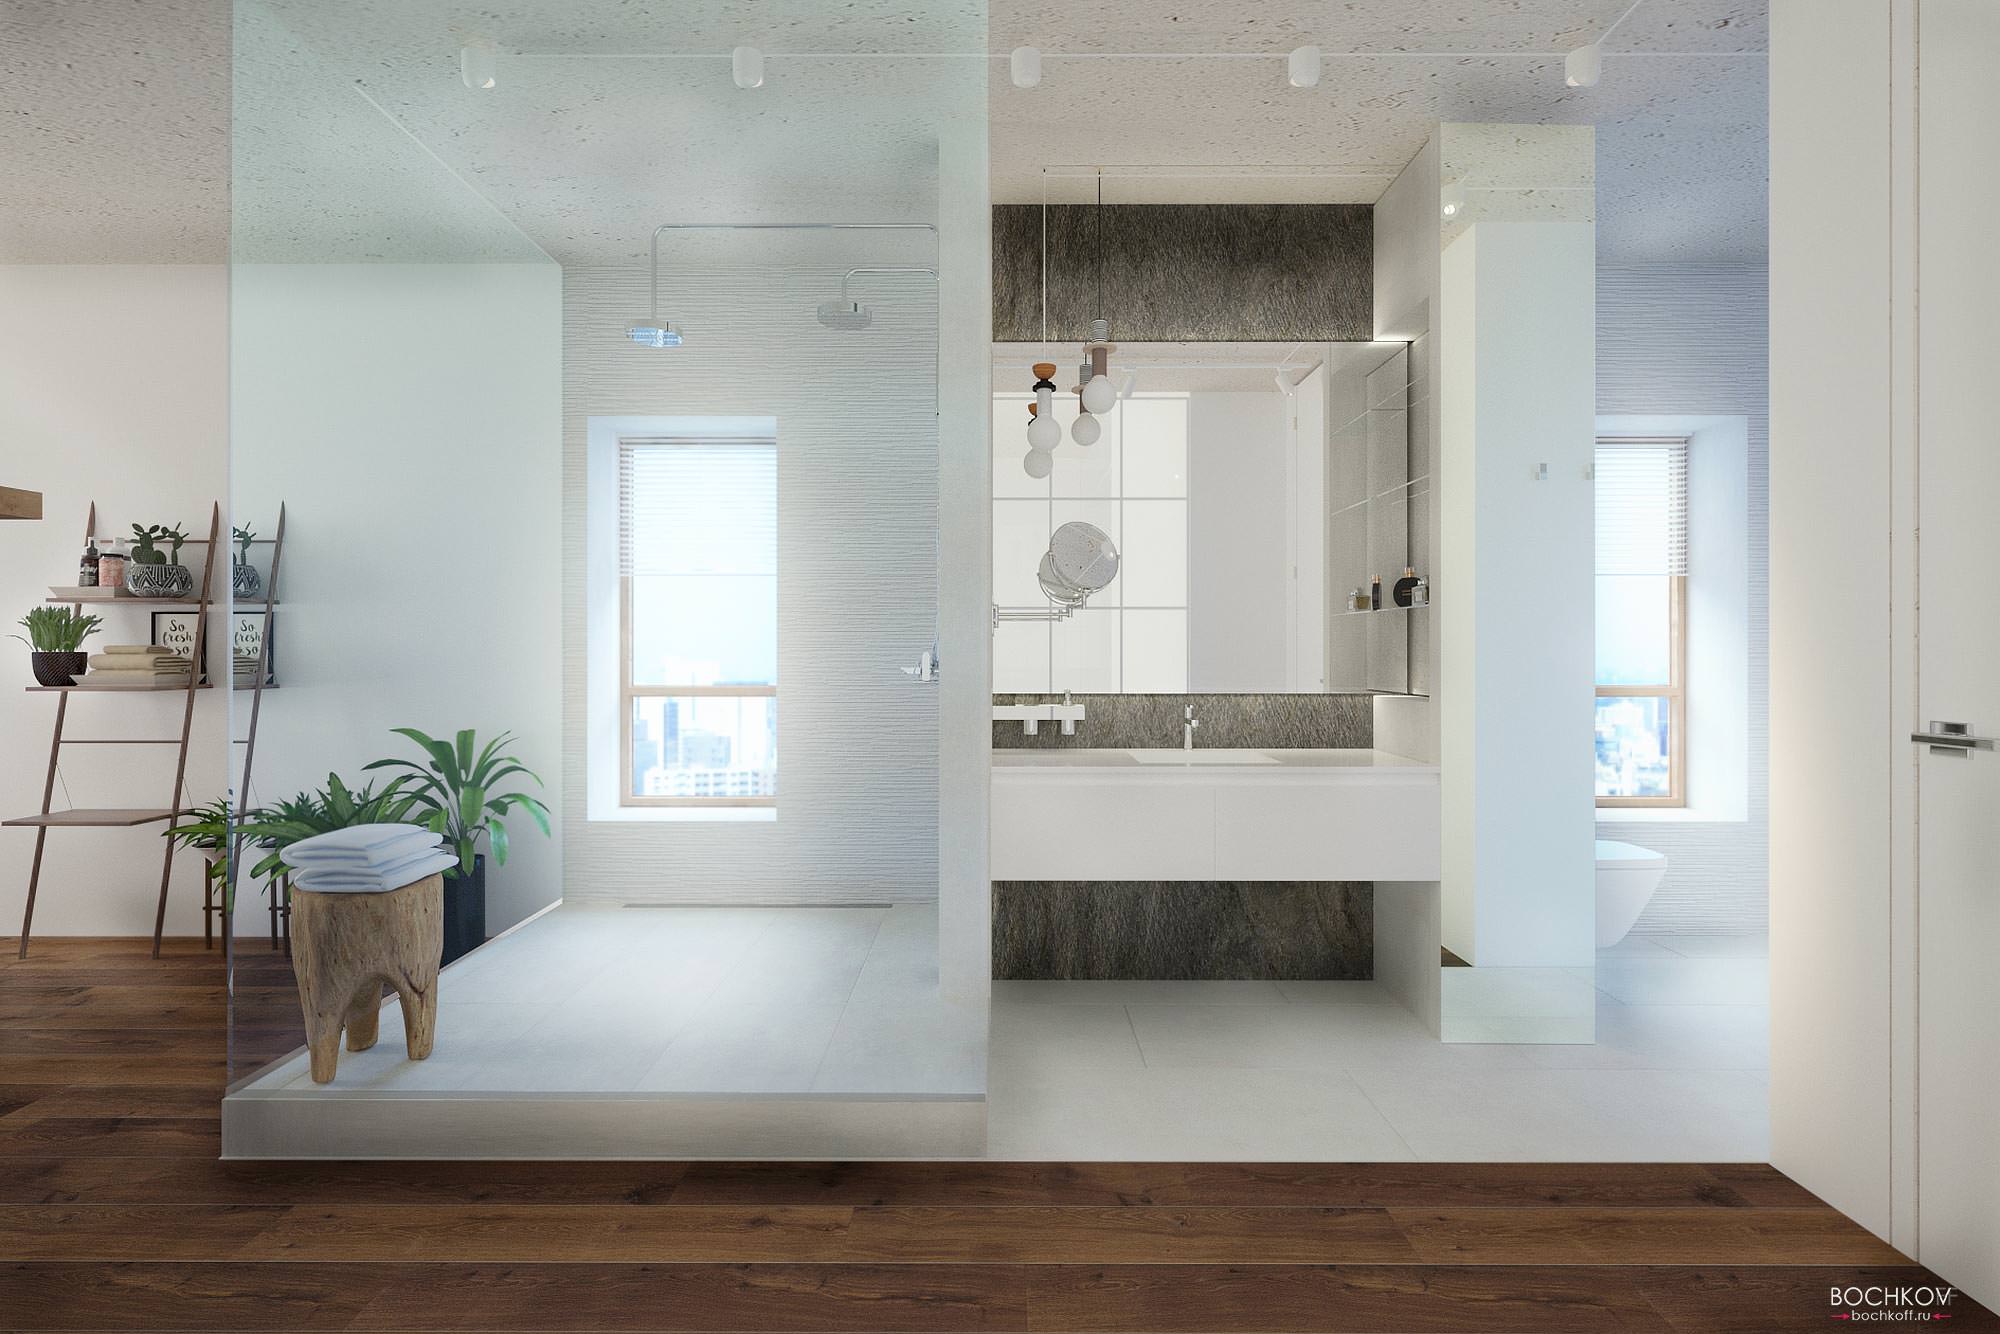 Фронтальный вид ванной комнаты в спальне, Дизайн интерьера в ЖК Макаровский 2020г.